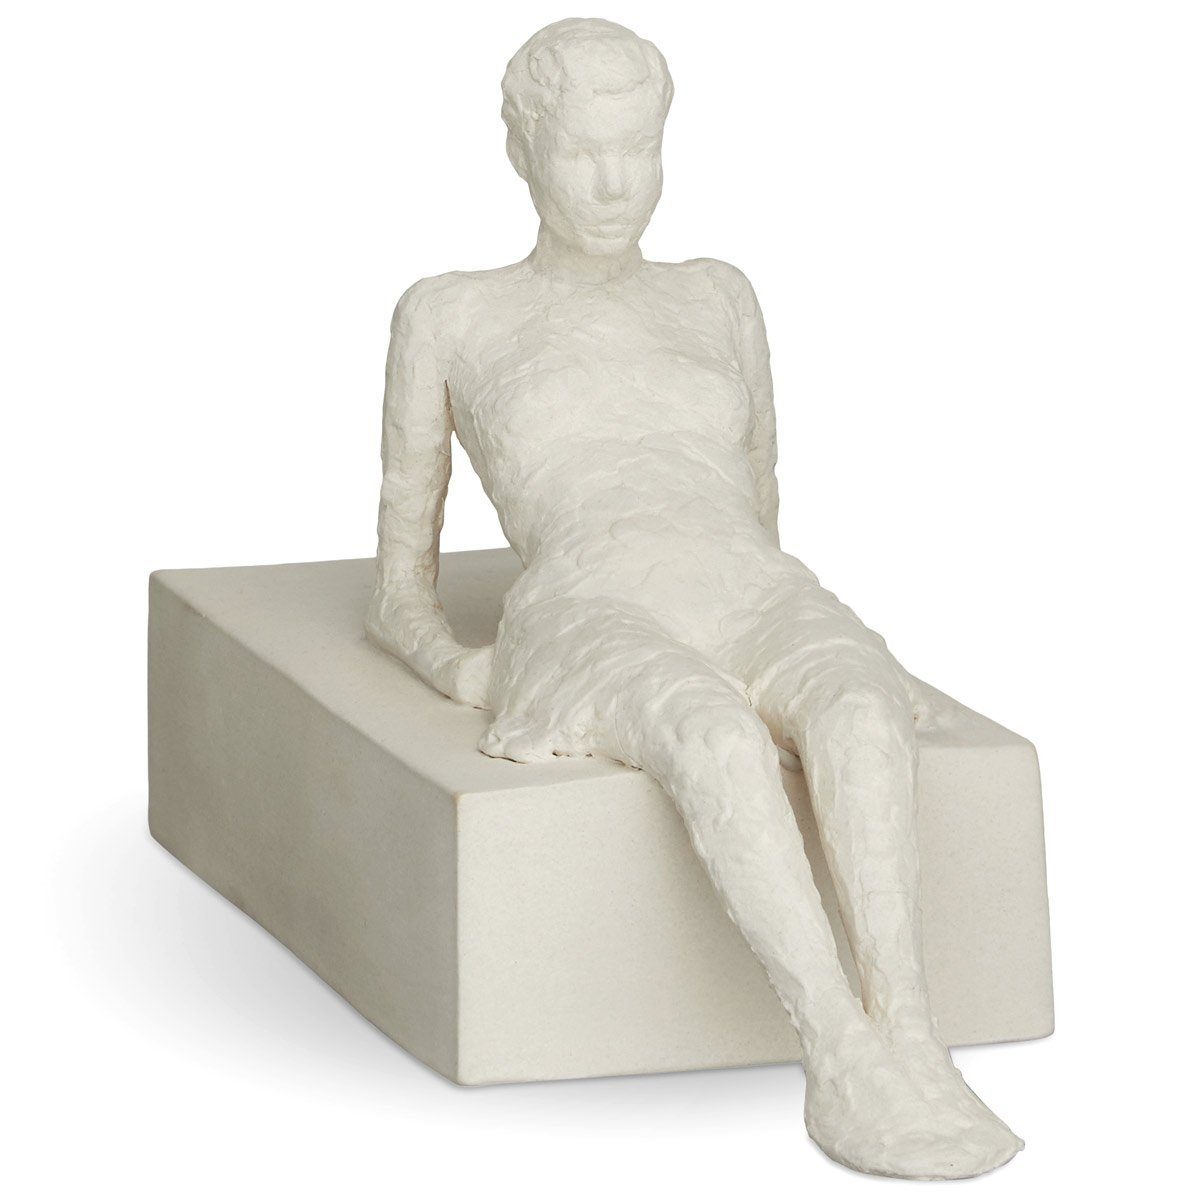 Kähler Dekofigur The Attentive One (Die Aufmerksame); Keramik Skulptur aus der 'Character' Serie von Bildhauerin Malene Bjelke | Dekofiguren